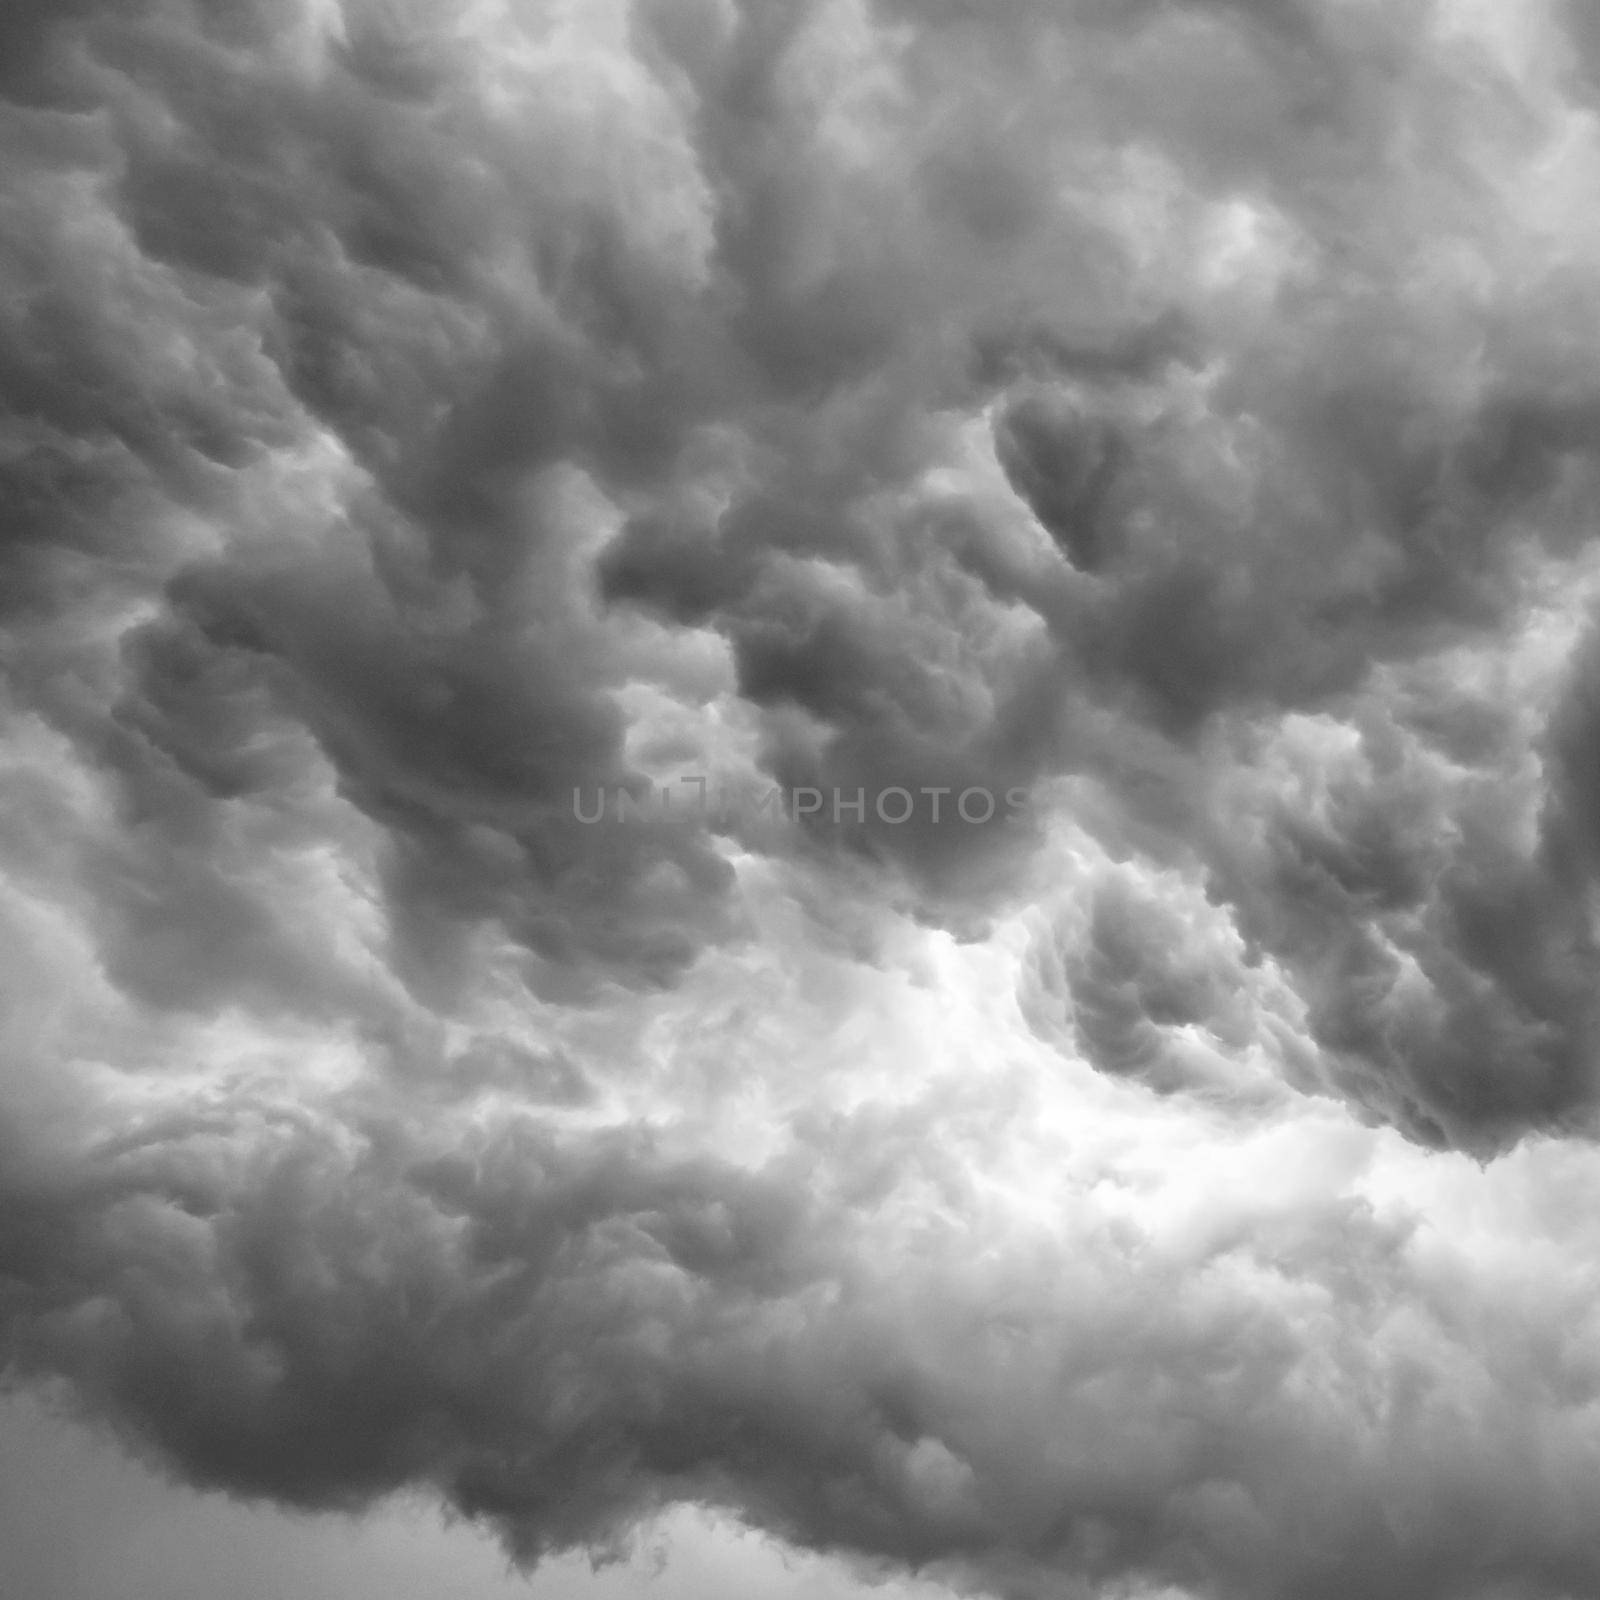 Rainy cloudy sky background by germanopoli